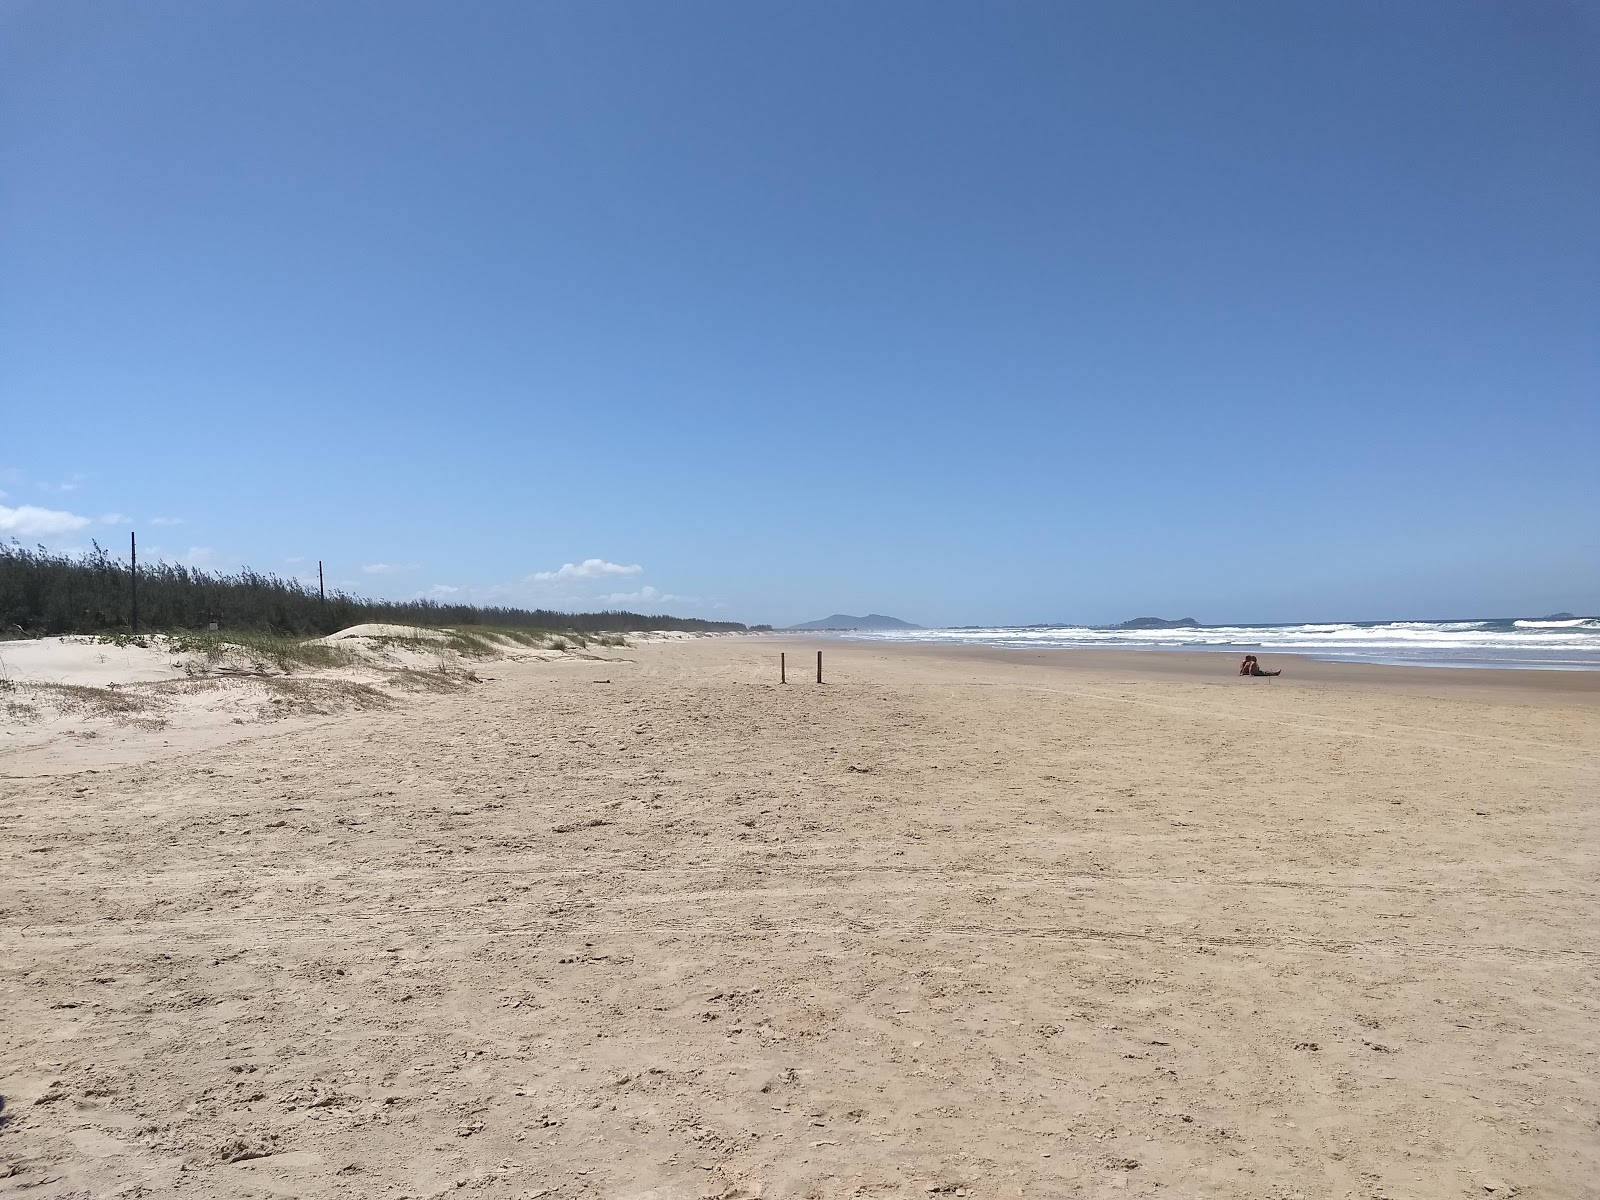 Fotografie cu Praia do Sol cu o suprafață de nisip fin strălucitor